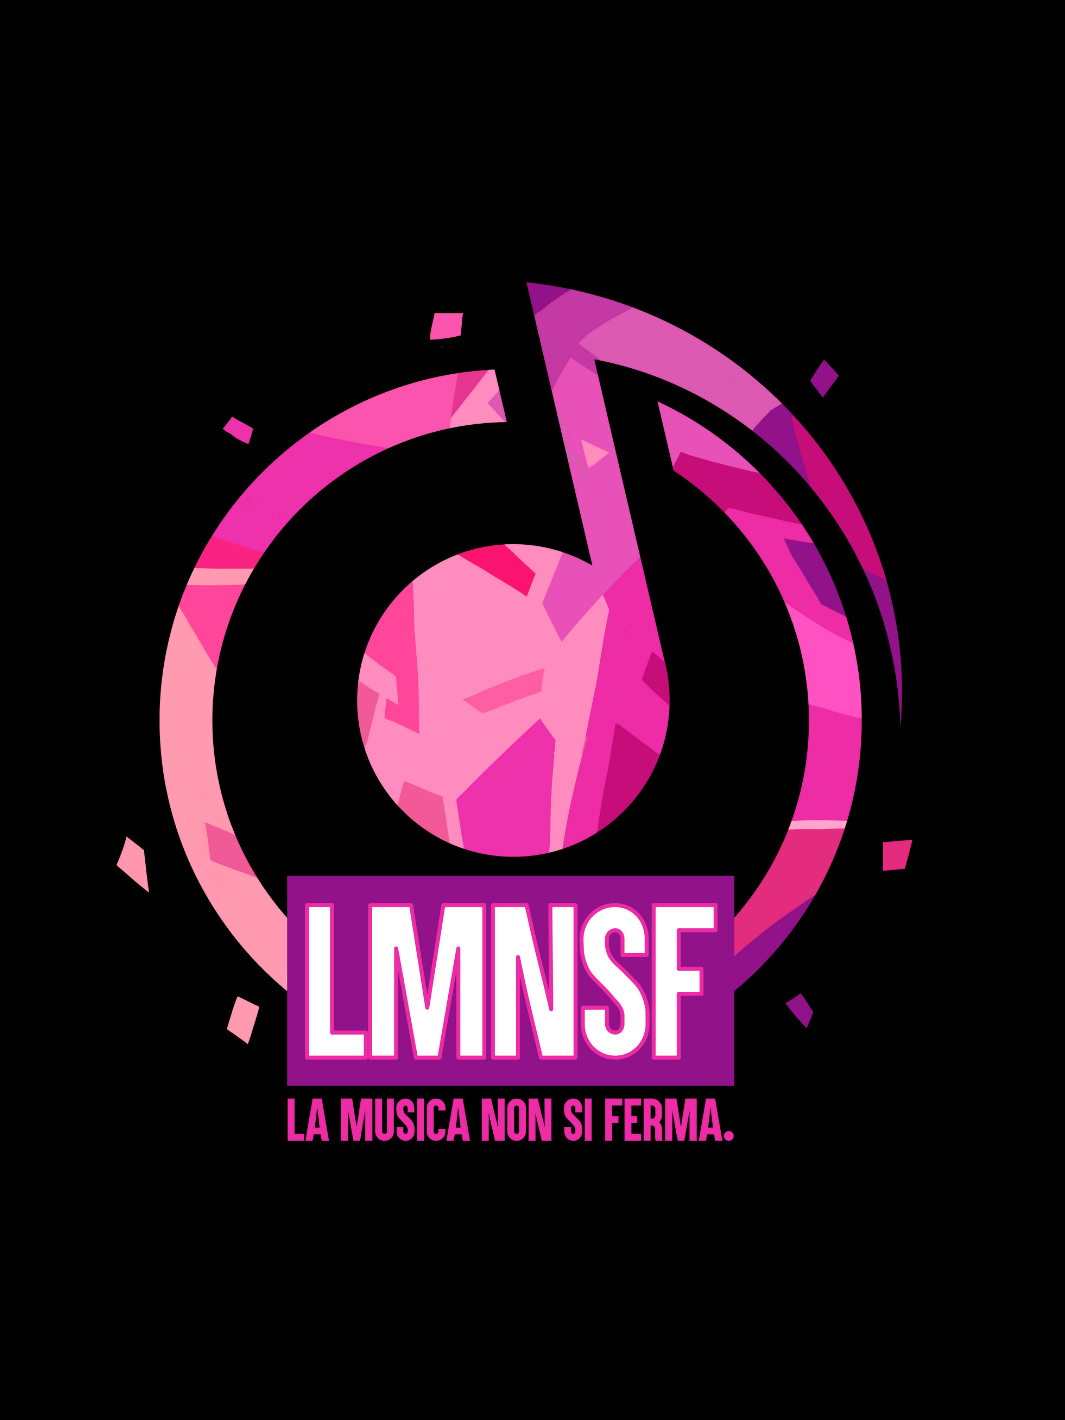 Logo "La musica non si ferma" by Alessandro Pautasso.